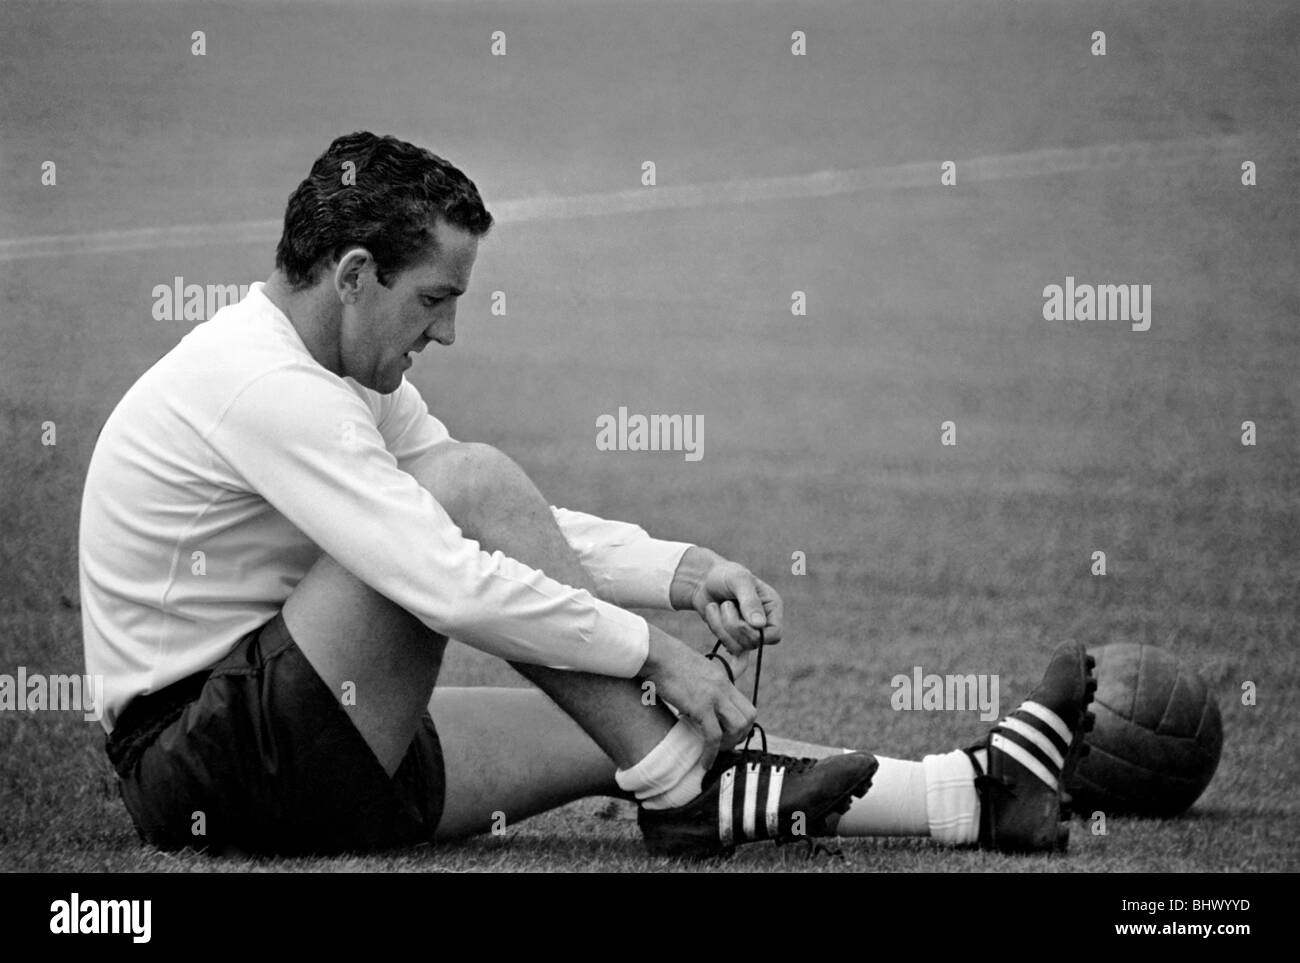 Tottenham Hotspur player Dave Mackay rejoint ses lacets pendant une session de formation d'avant-saison. Juillet 1965 1965-1971-003 Banque D'Images